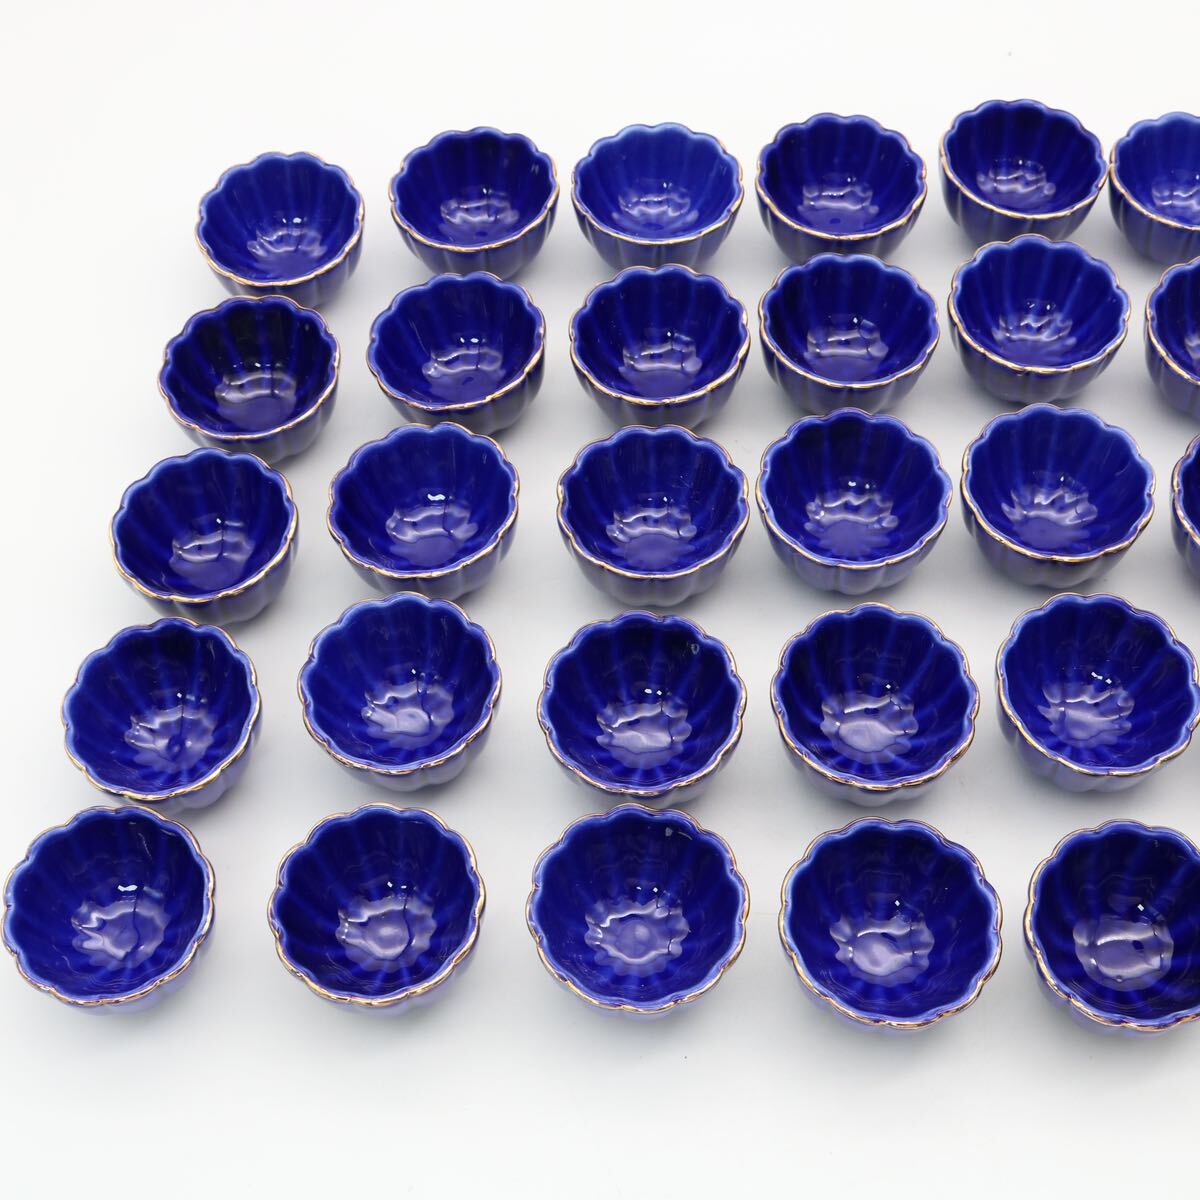 料亭 旅館 懐石料理 業務用食器 三つ足 珍味入 小付 豆鉢 瑠璃 ブルー 金彩 32個セット の画像4